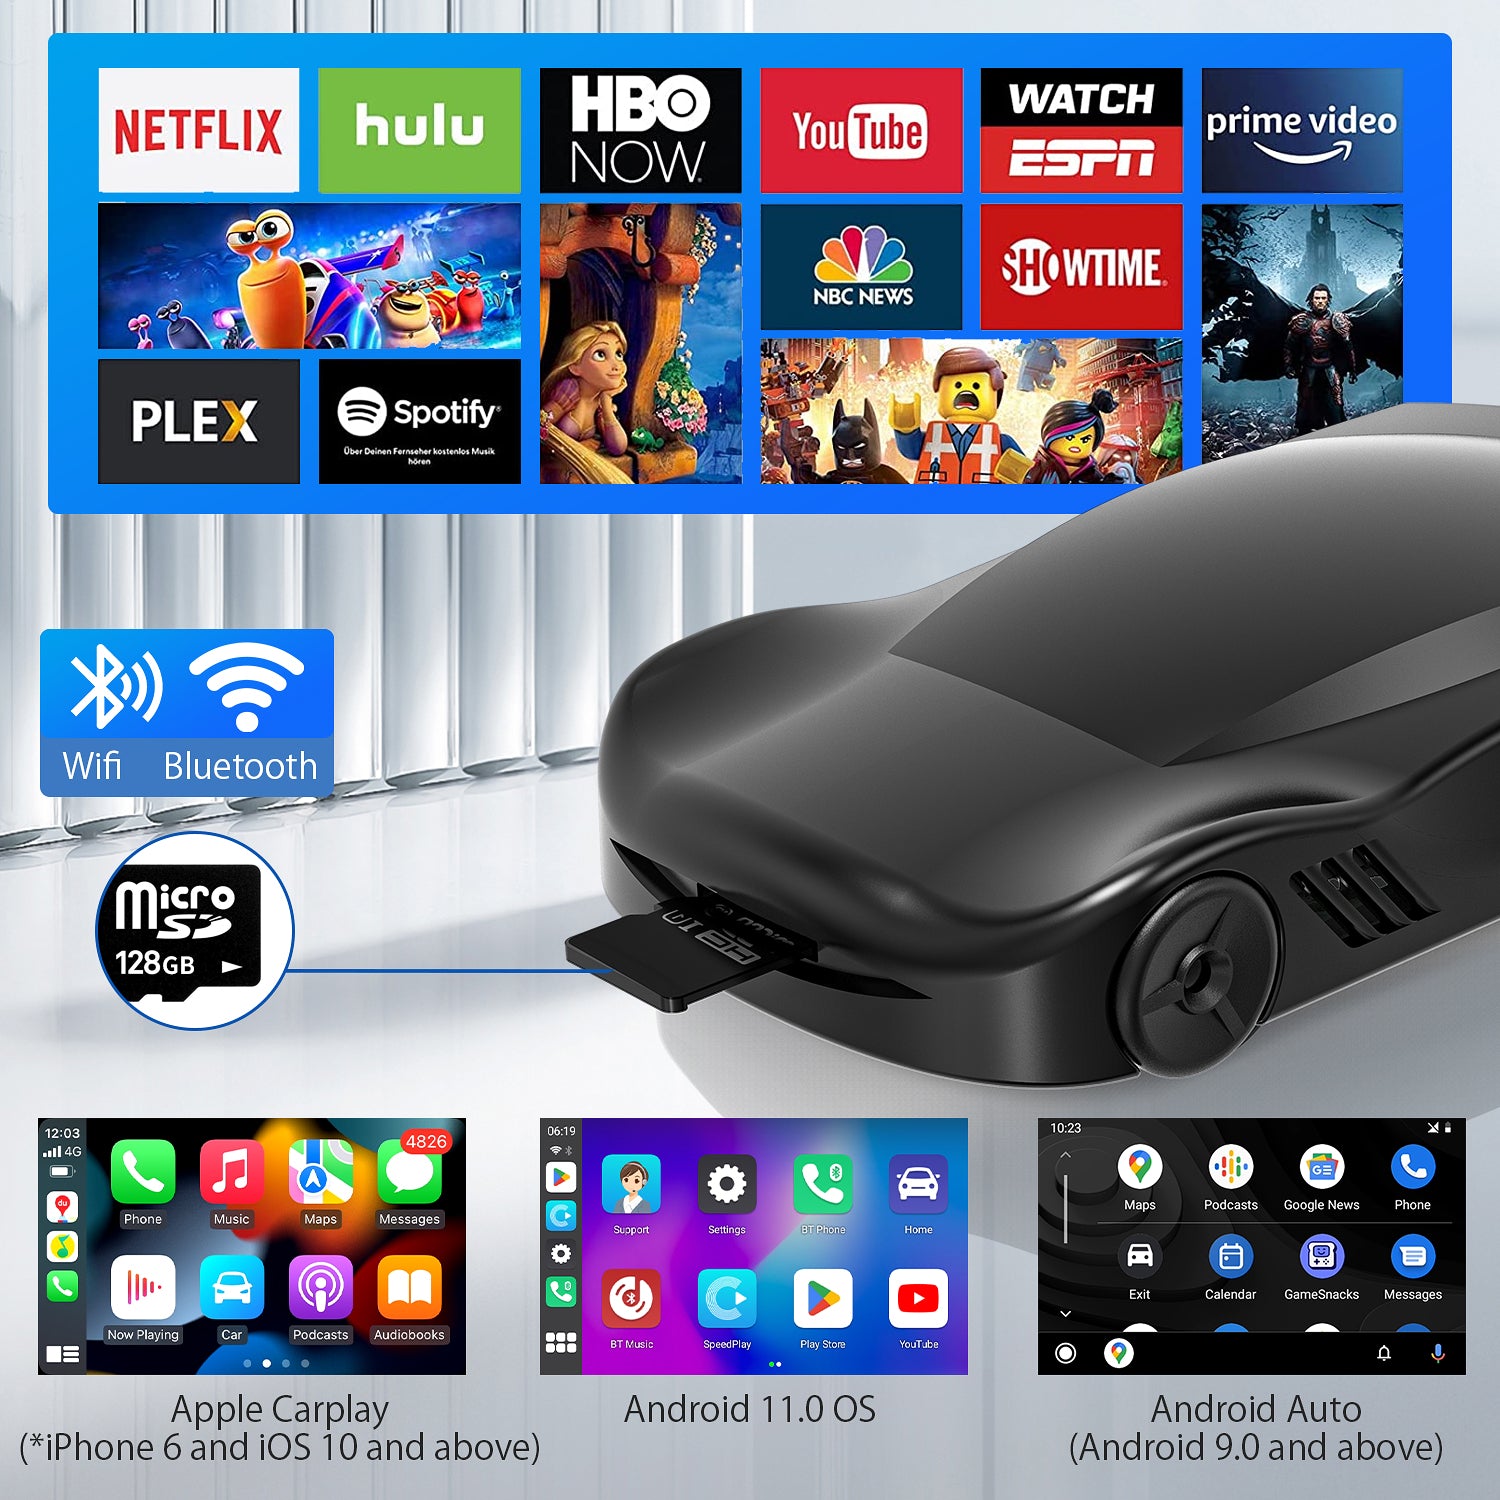 HERILARY C6 Wireless CarPlay & Android Auto AI Box – Herilary